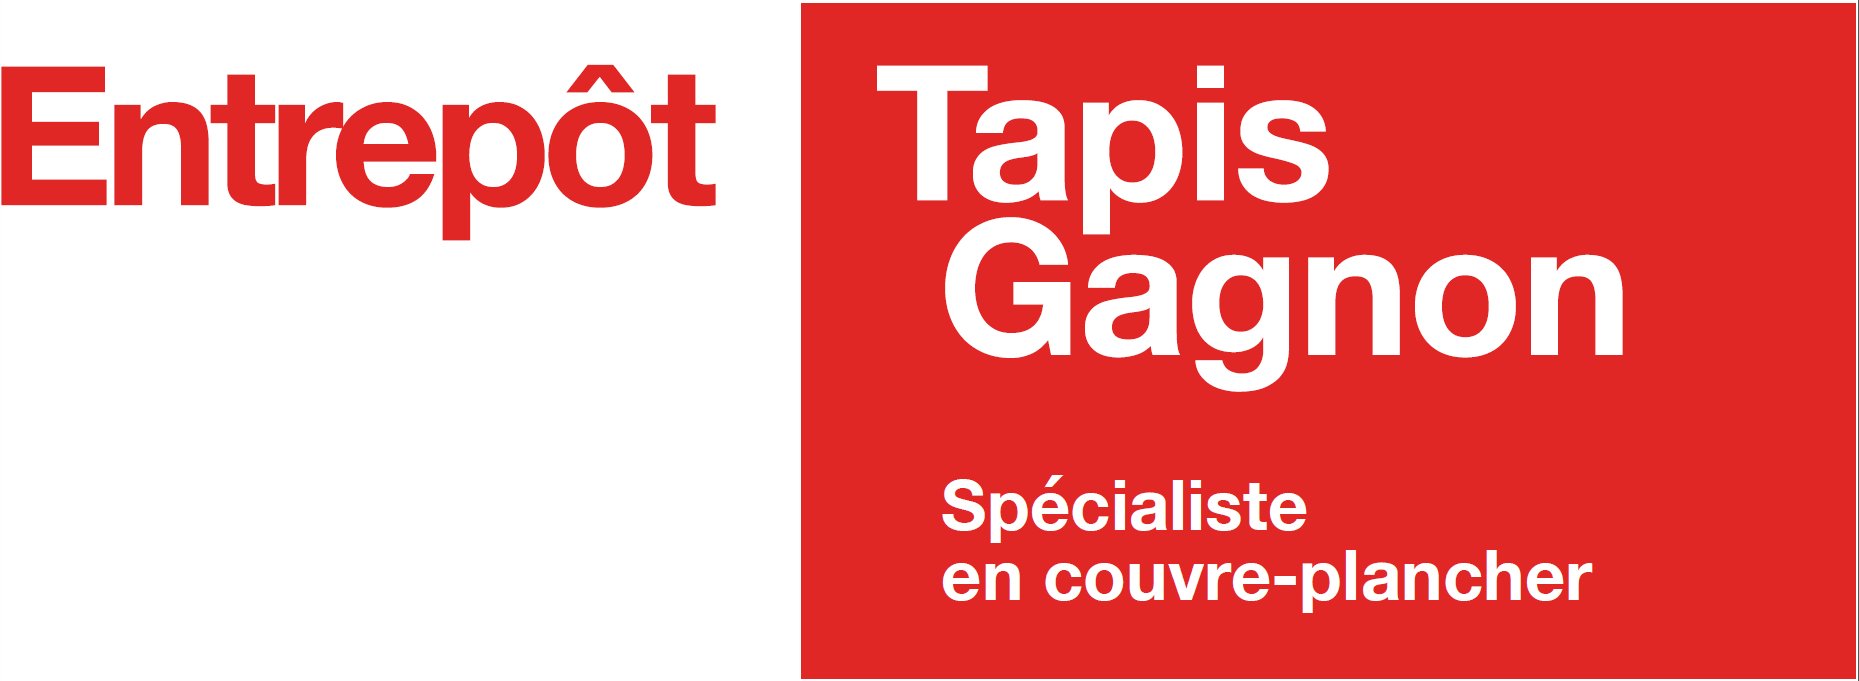 Entrepot Tapis Gagnon